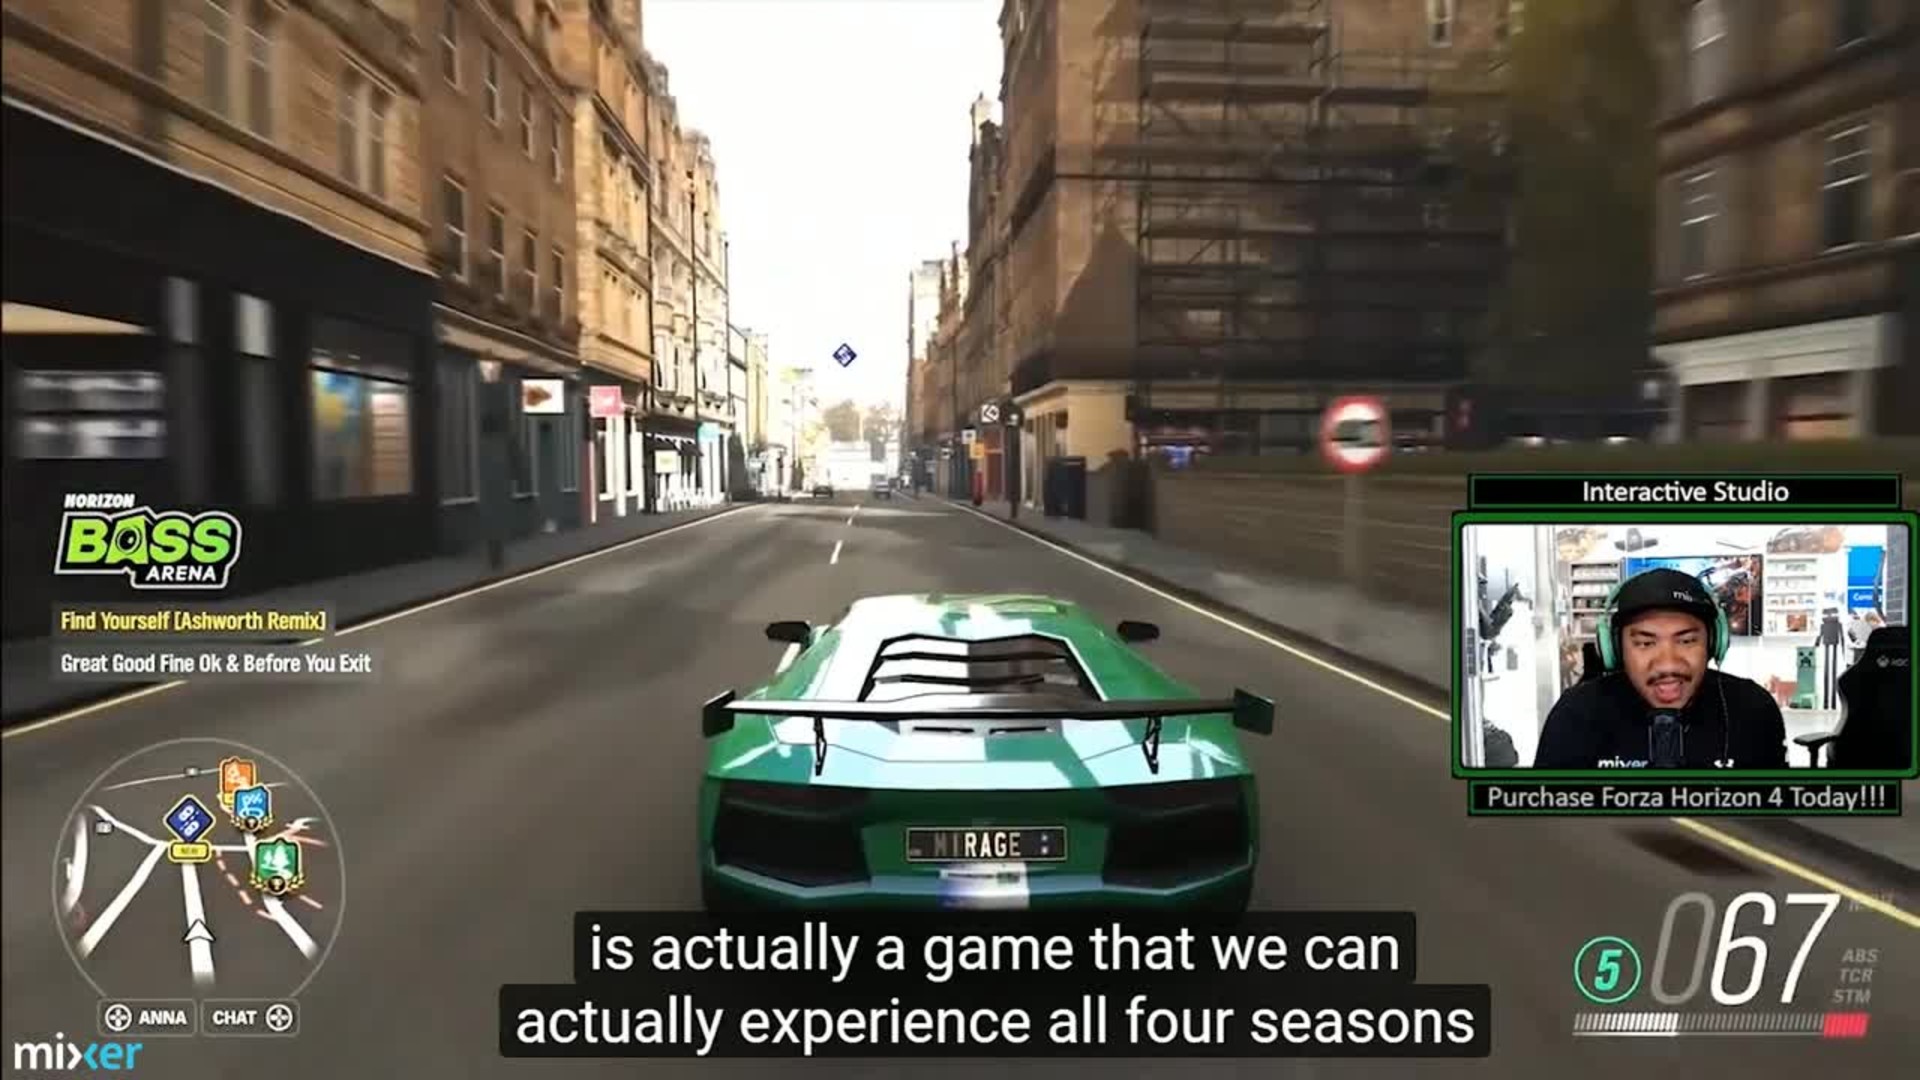 Comprar Forza Horizon 4 Standard Edition